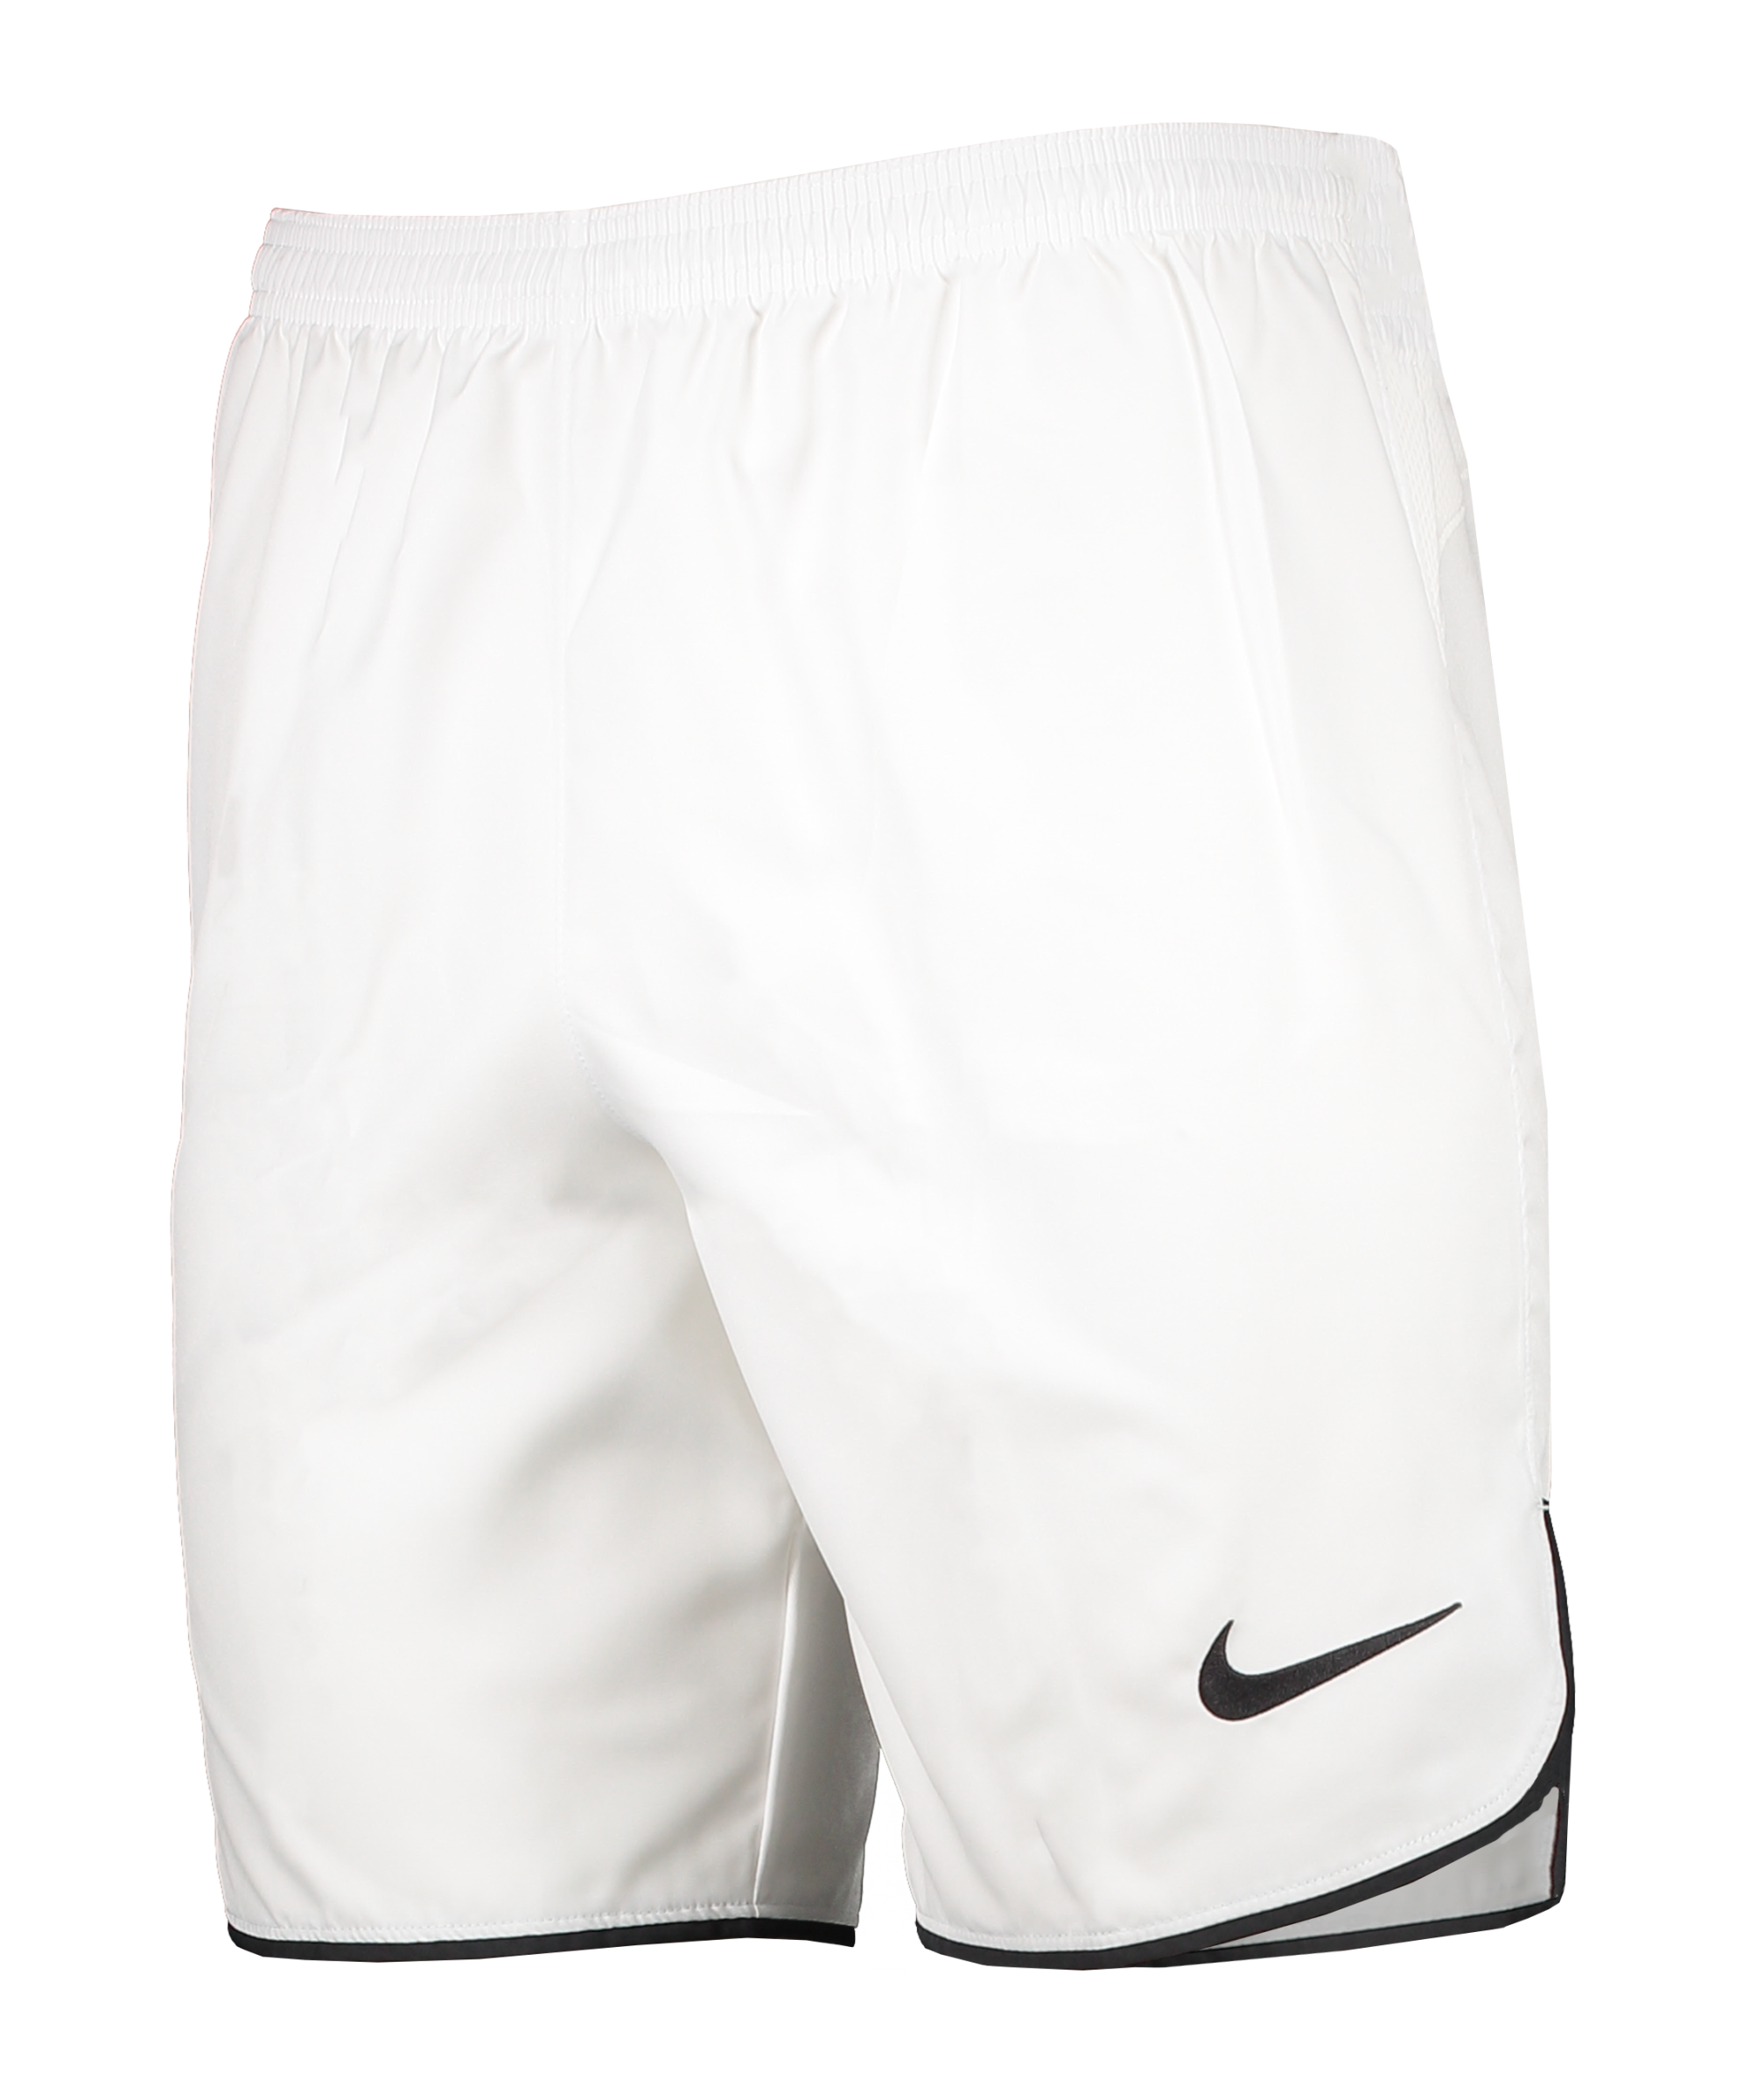 Pantalón corto Nike Laser V Woven